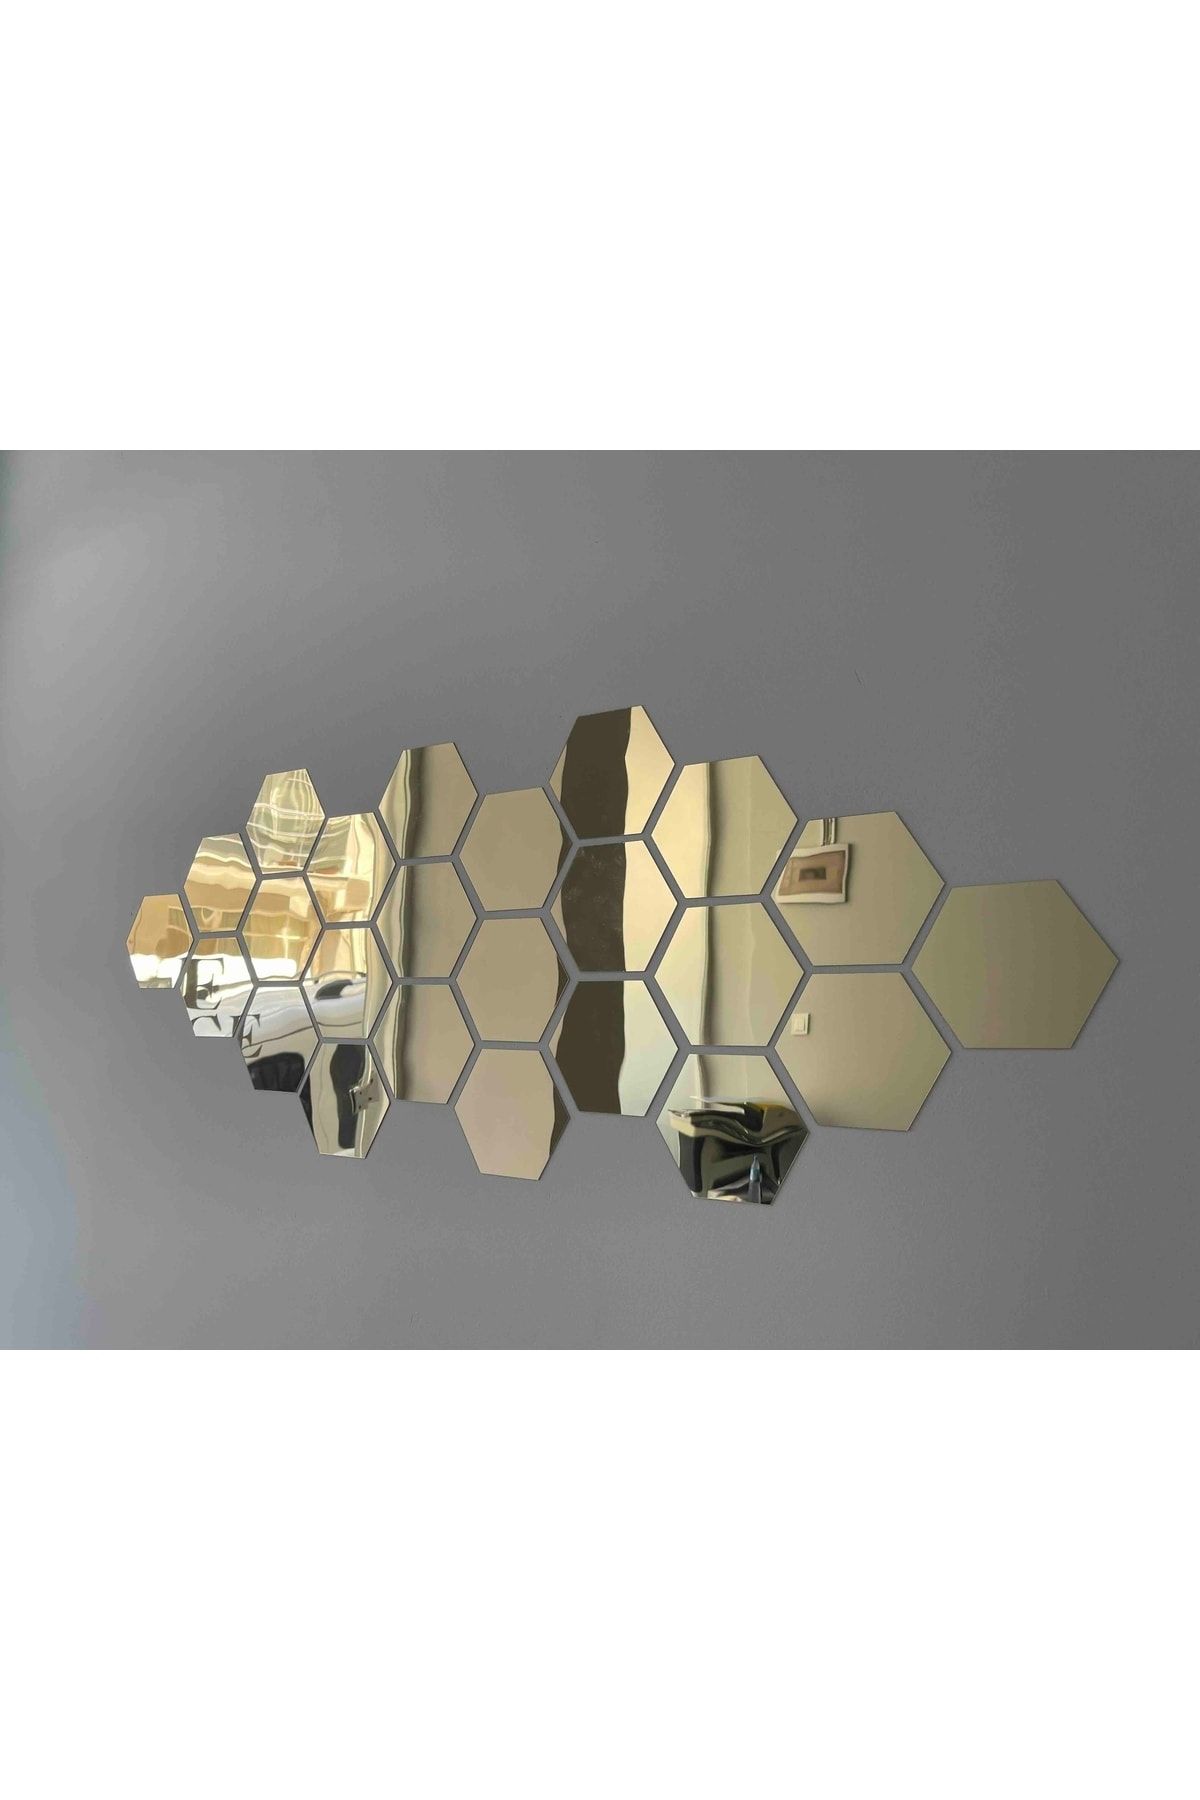 HomeJamin Dekoratif Pleksi Altıgen Bal Peteği Ayna 12 Adet 11x12.5cm Gold Gümüş